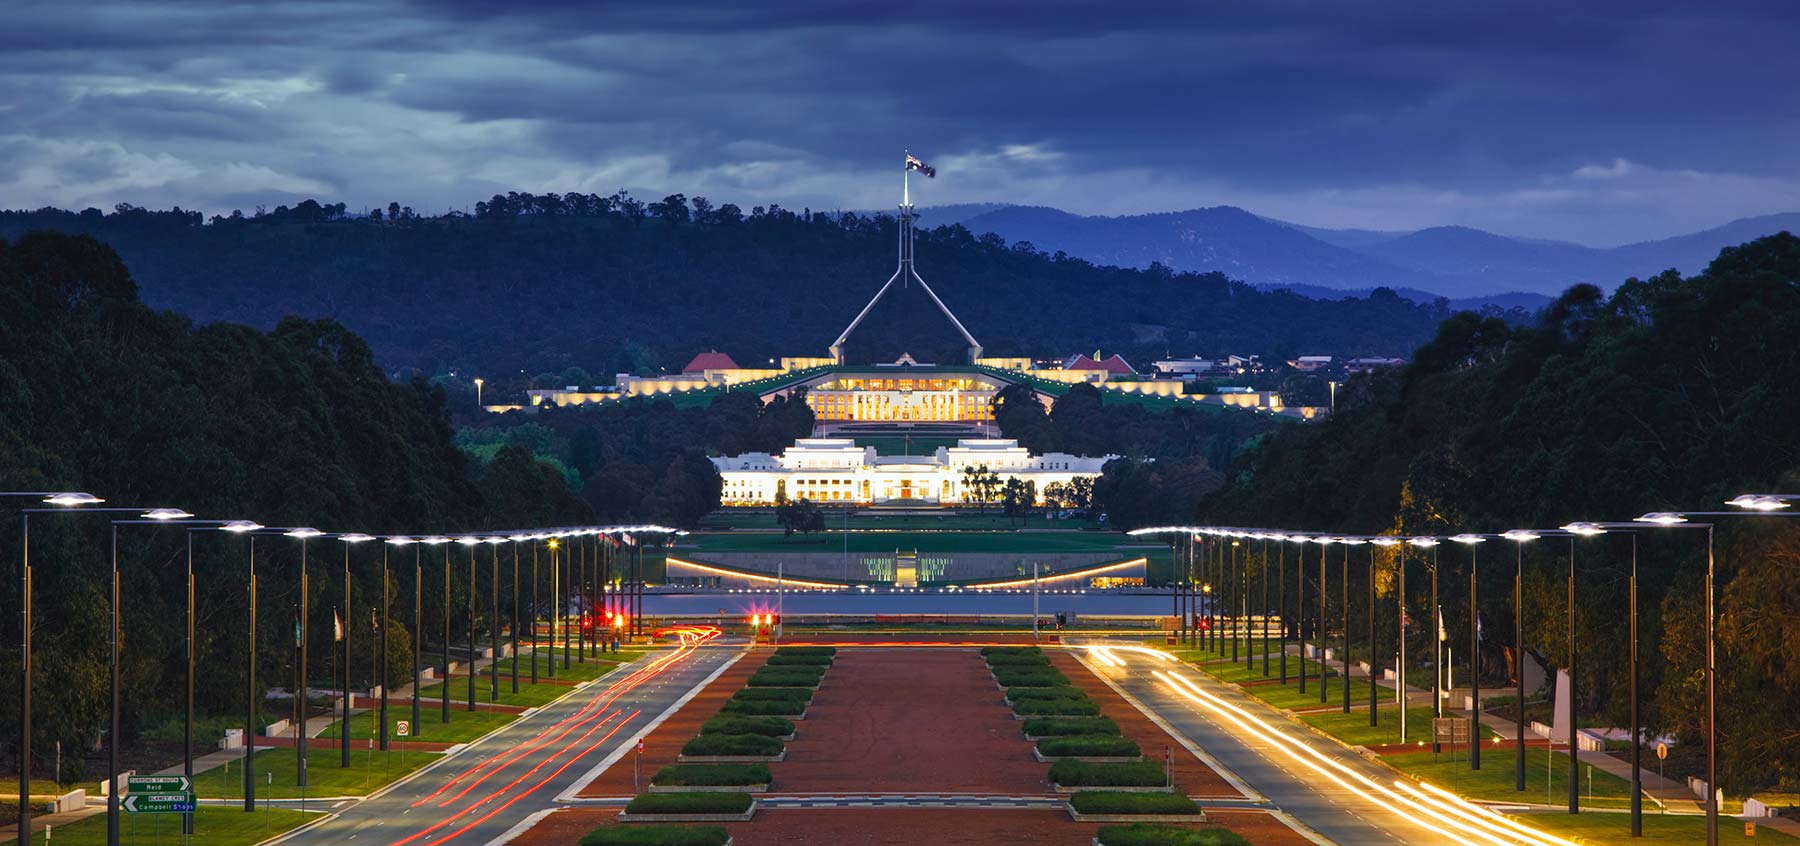 Slide: Canberra